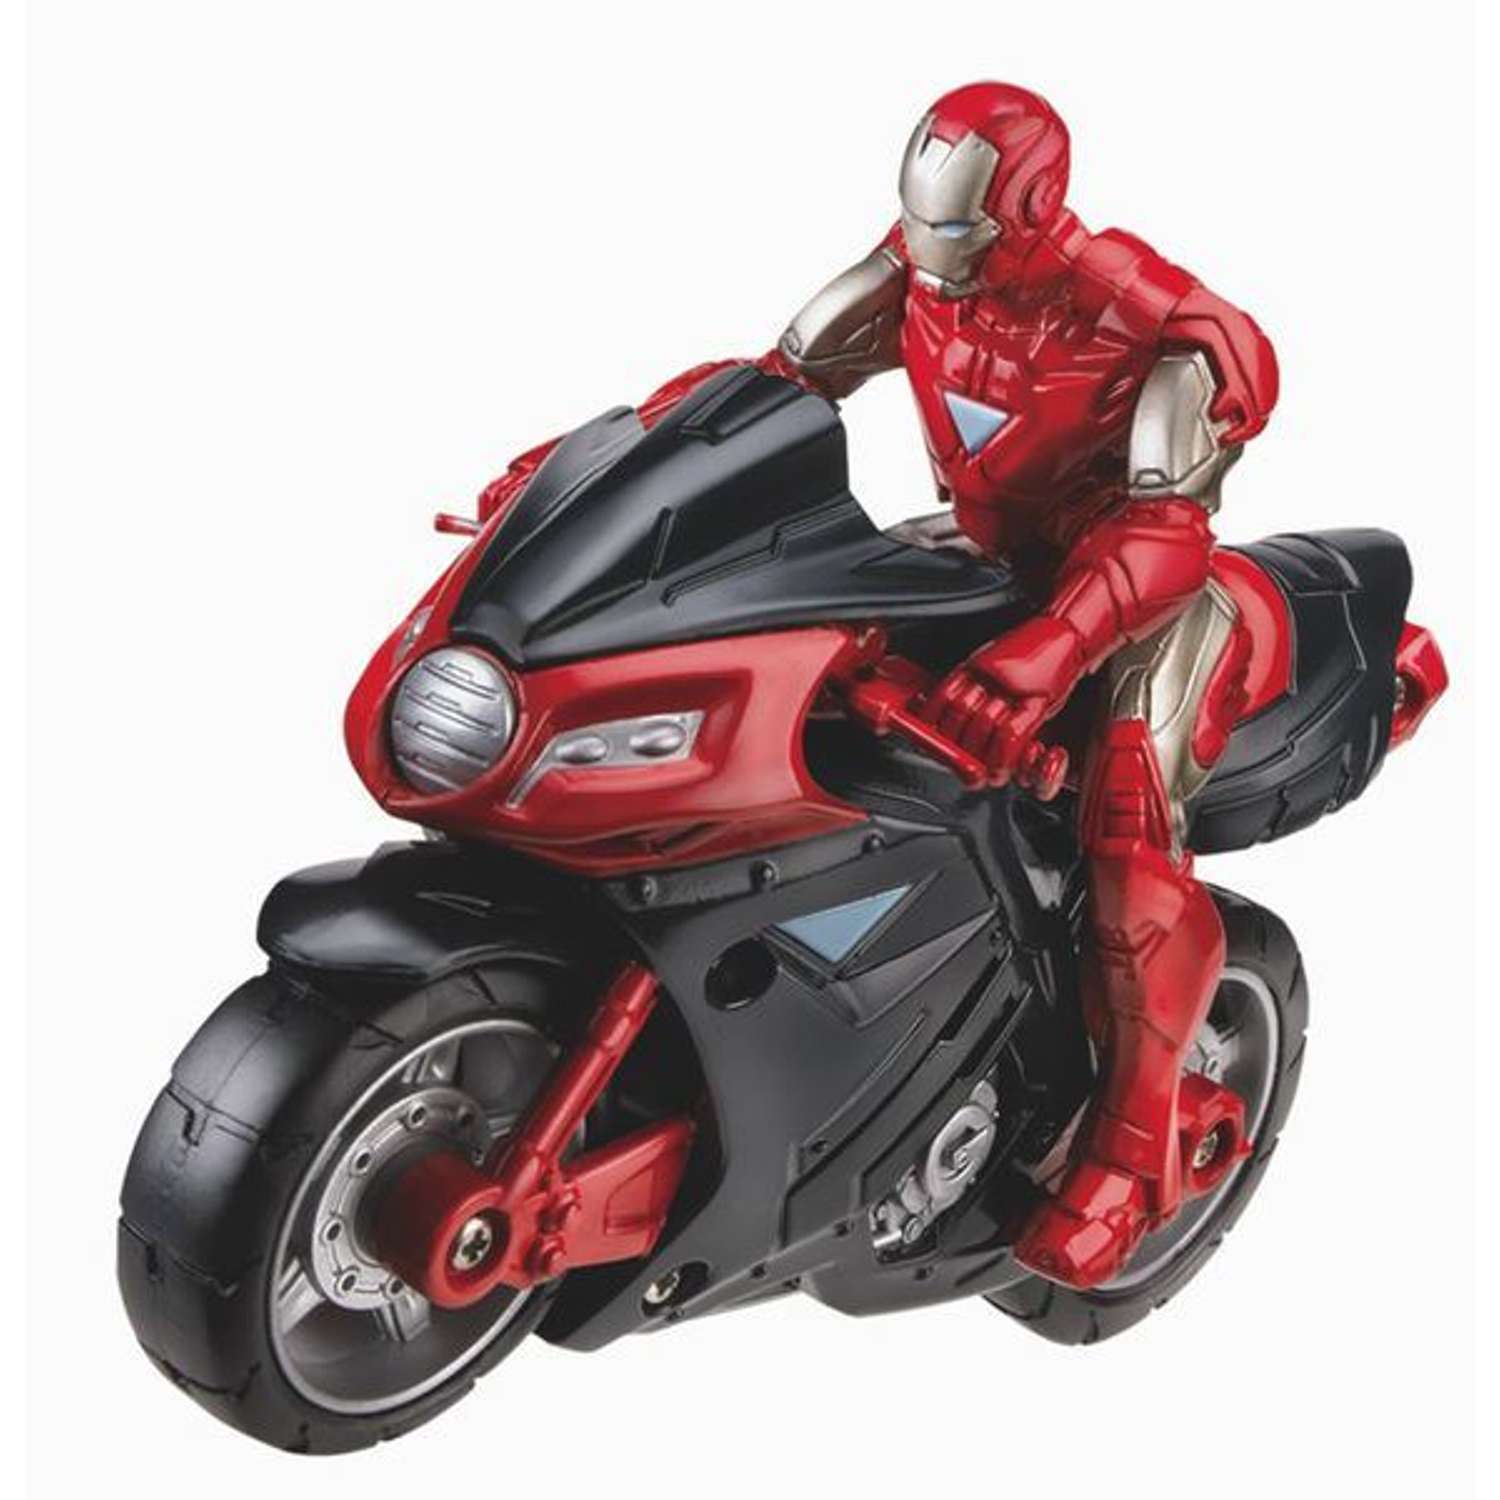 Фигурки Мстителей Marvel на транспортном средстве в ассортименте - фото 1